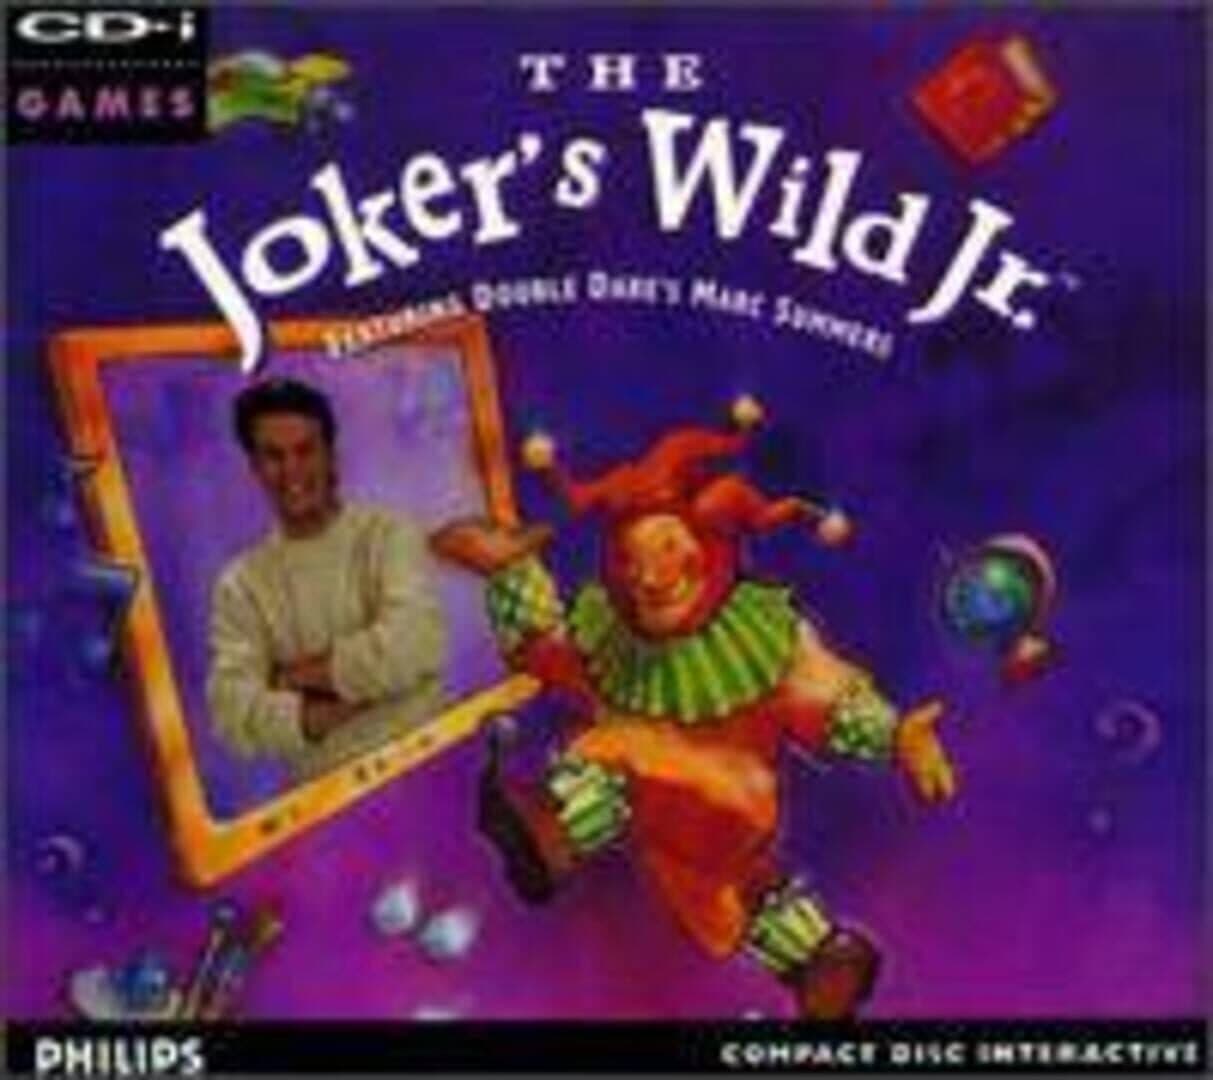 The Joker's Wild Jr. cover art